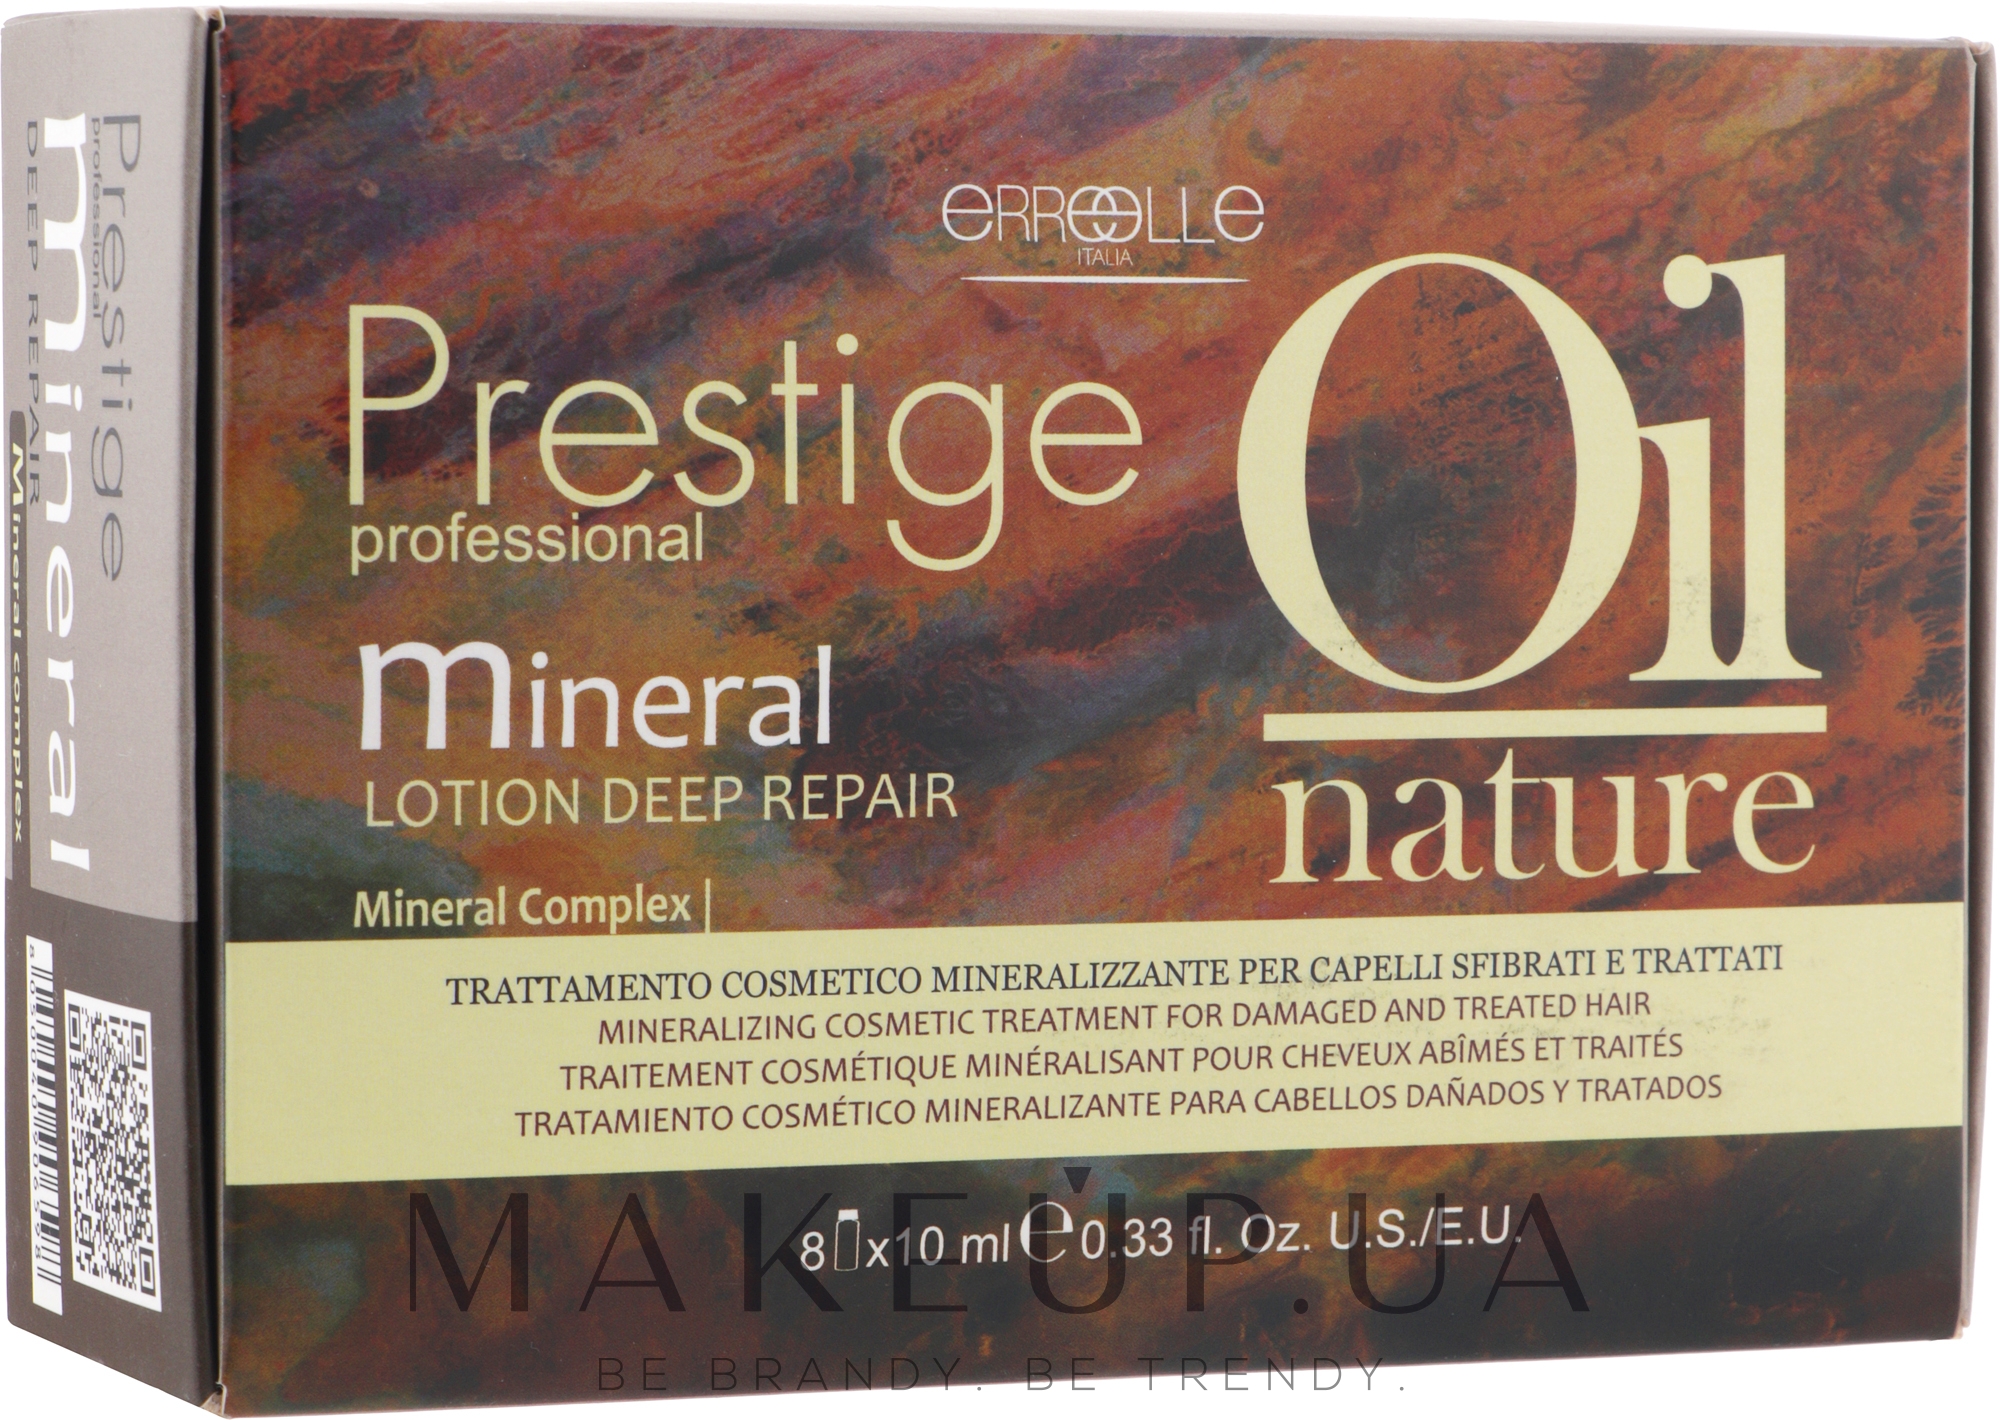 Ампули для лікування пошкодженого волосся - Erreelle Italia Prestige Oil Nature Mineral — фото 8x10ml